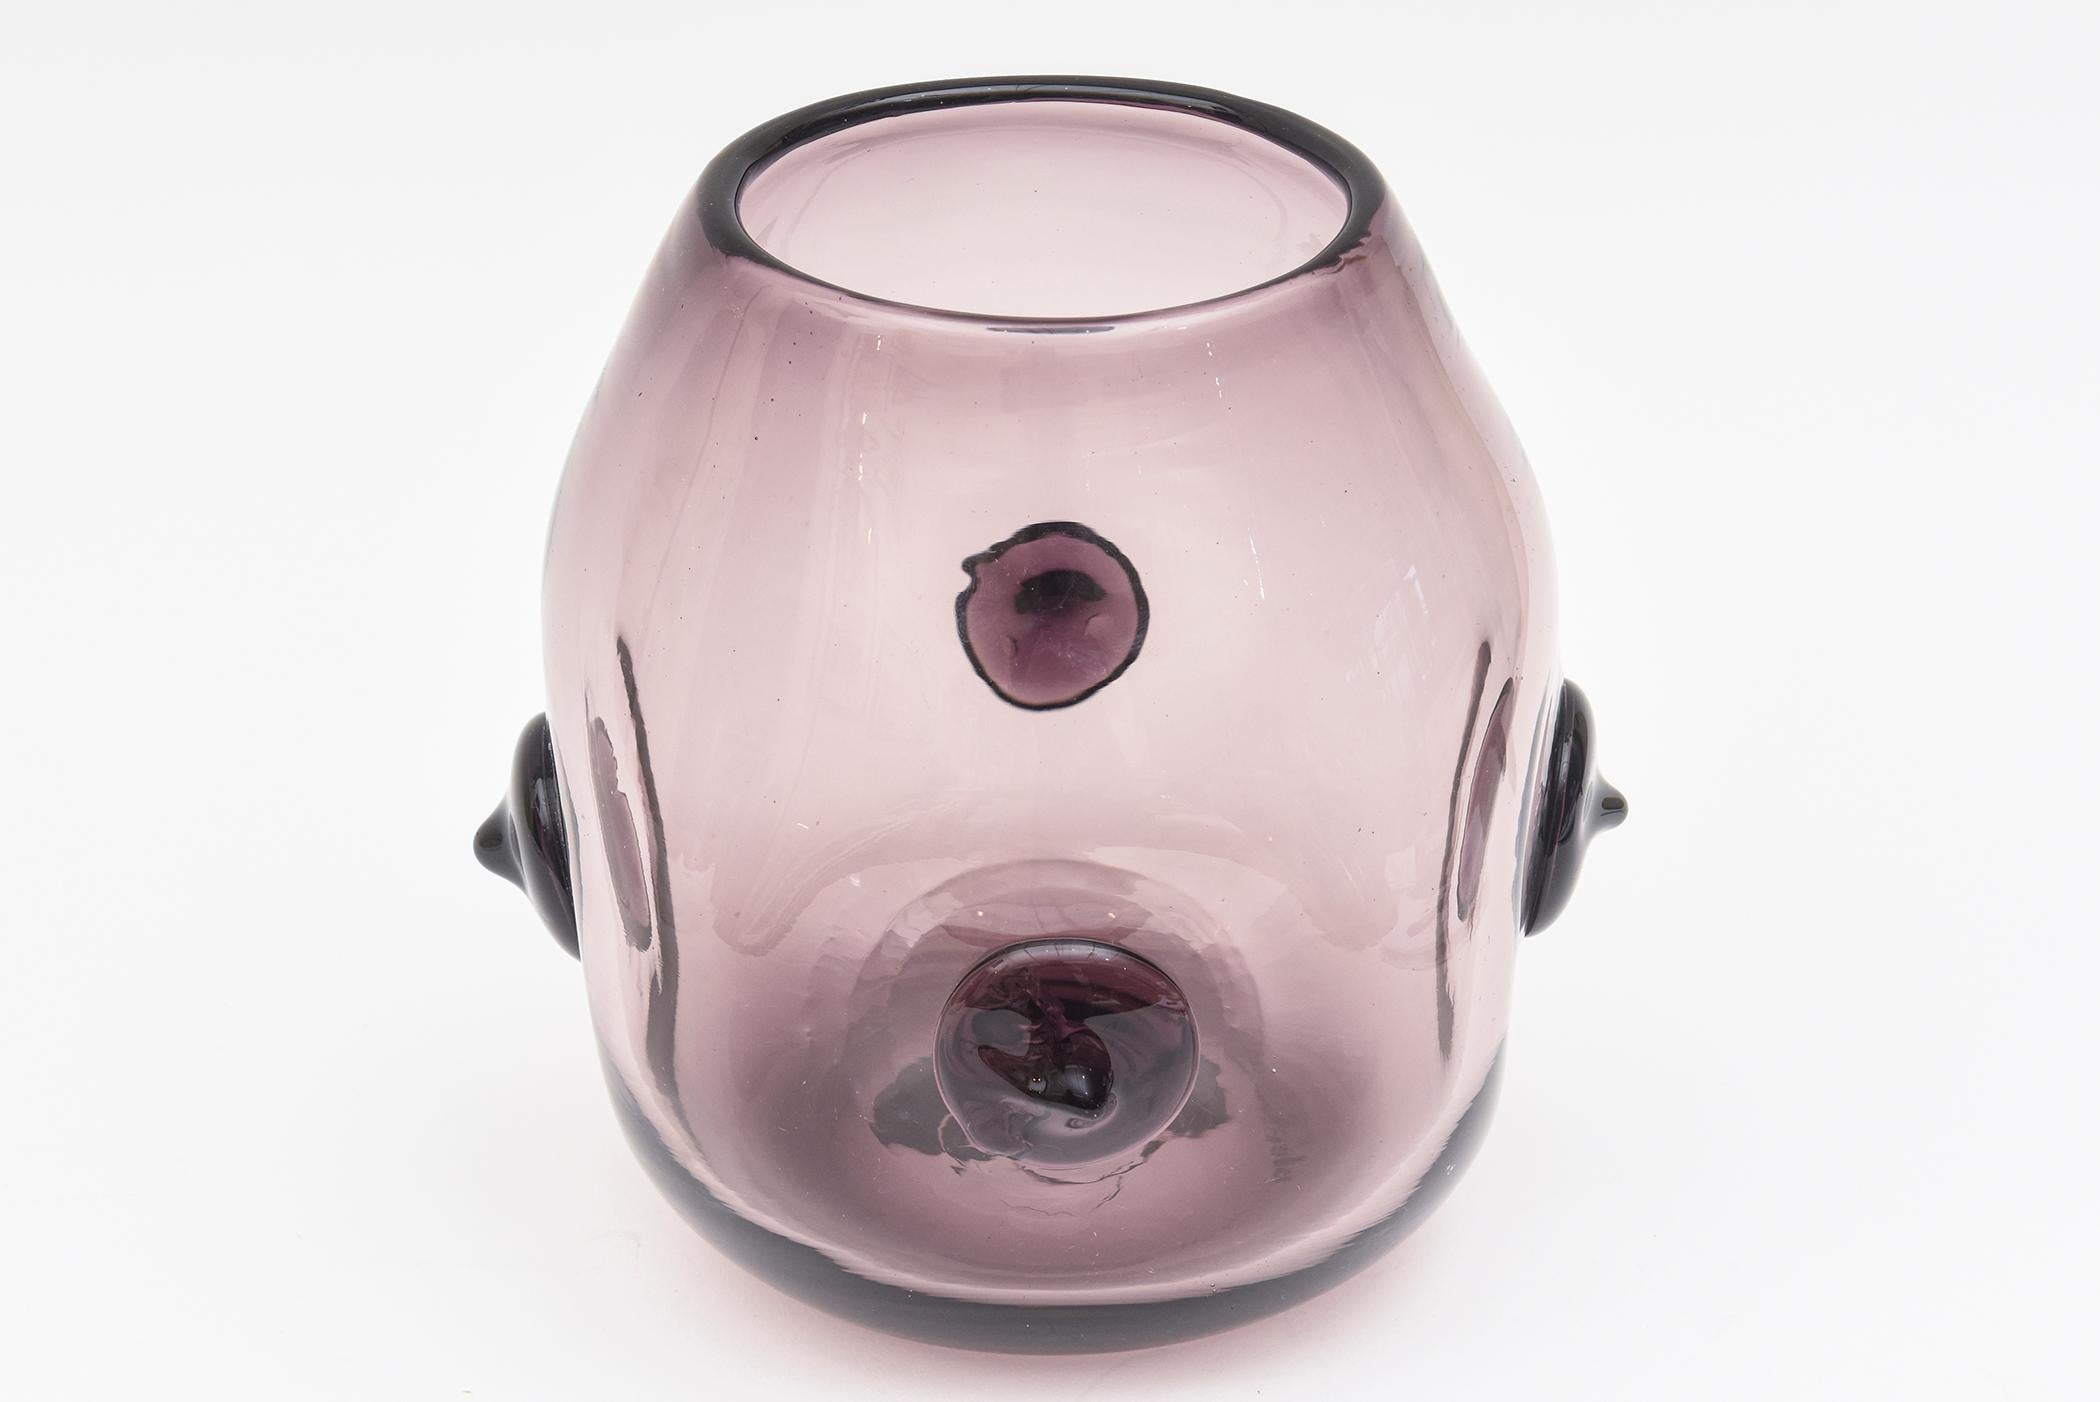 Ce vase ou récipient signé Blenko, rare et obscur, est d'une couleur luxuriante de violet clair. Elle a été conçue par Wayne Husted pour Blenko et était très probablement une pièce expérimentale, ce qui la rend encore plus rare. Il est entouré de 4